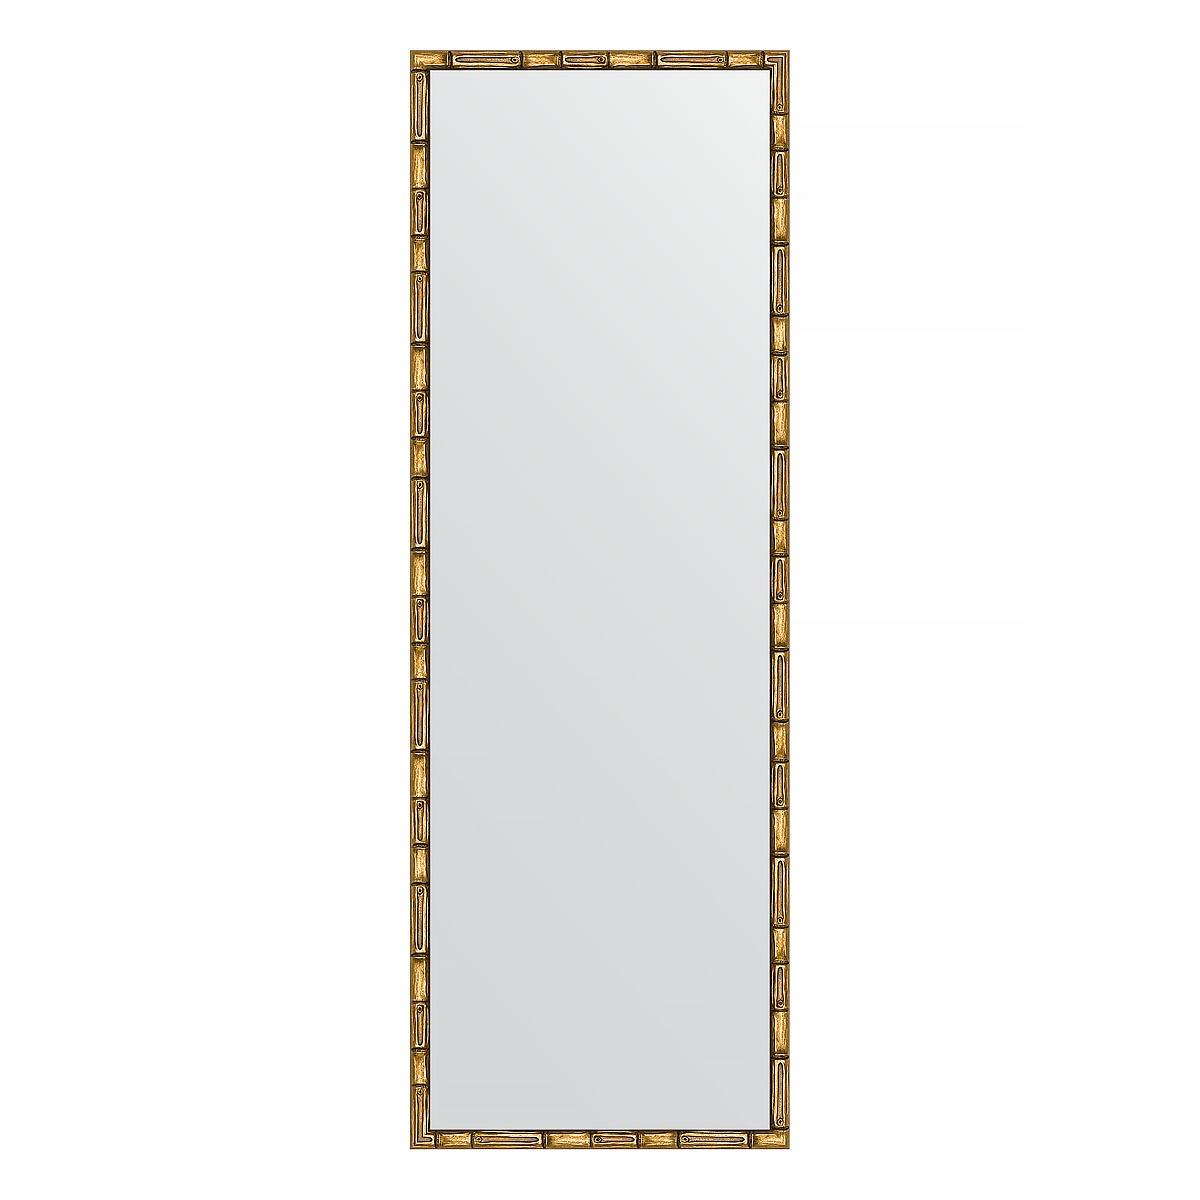 Зеркало в багетной раме Evoform золотой бамбук 24 мм 47х137 см зеркало с фацетом в багетной раме evoform серебряный бамбук 73 мм 58х143 см